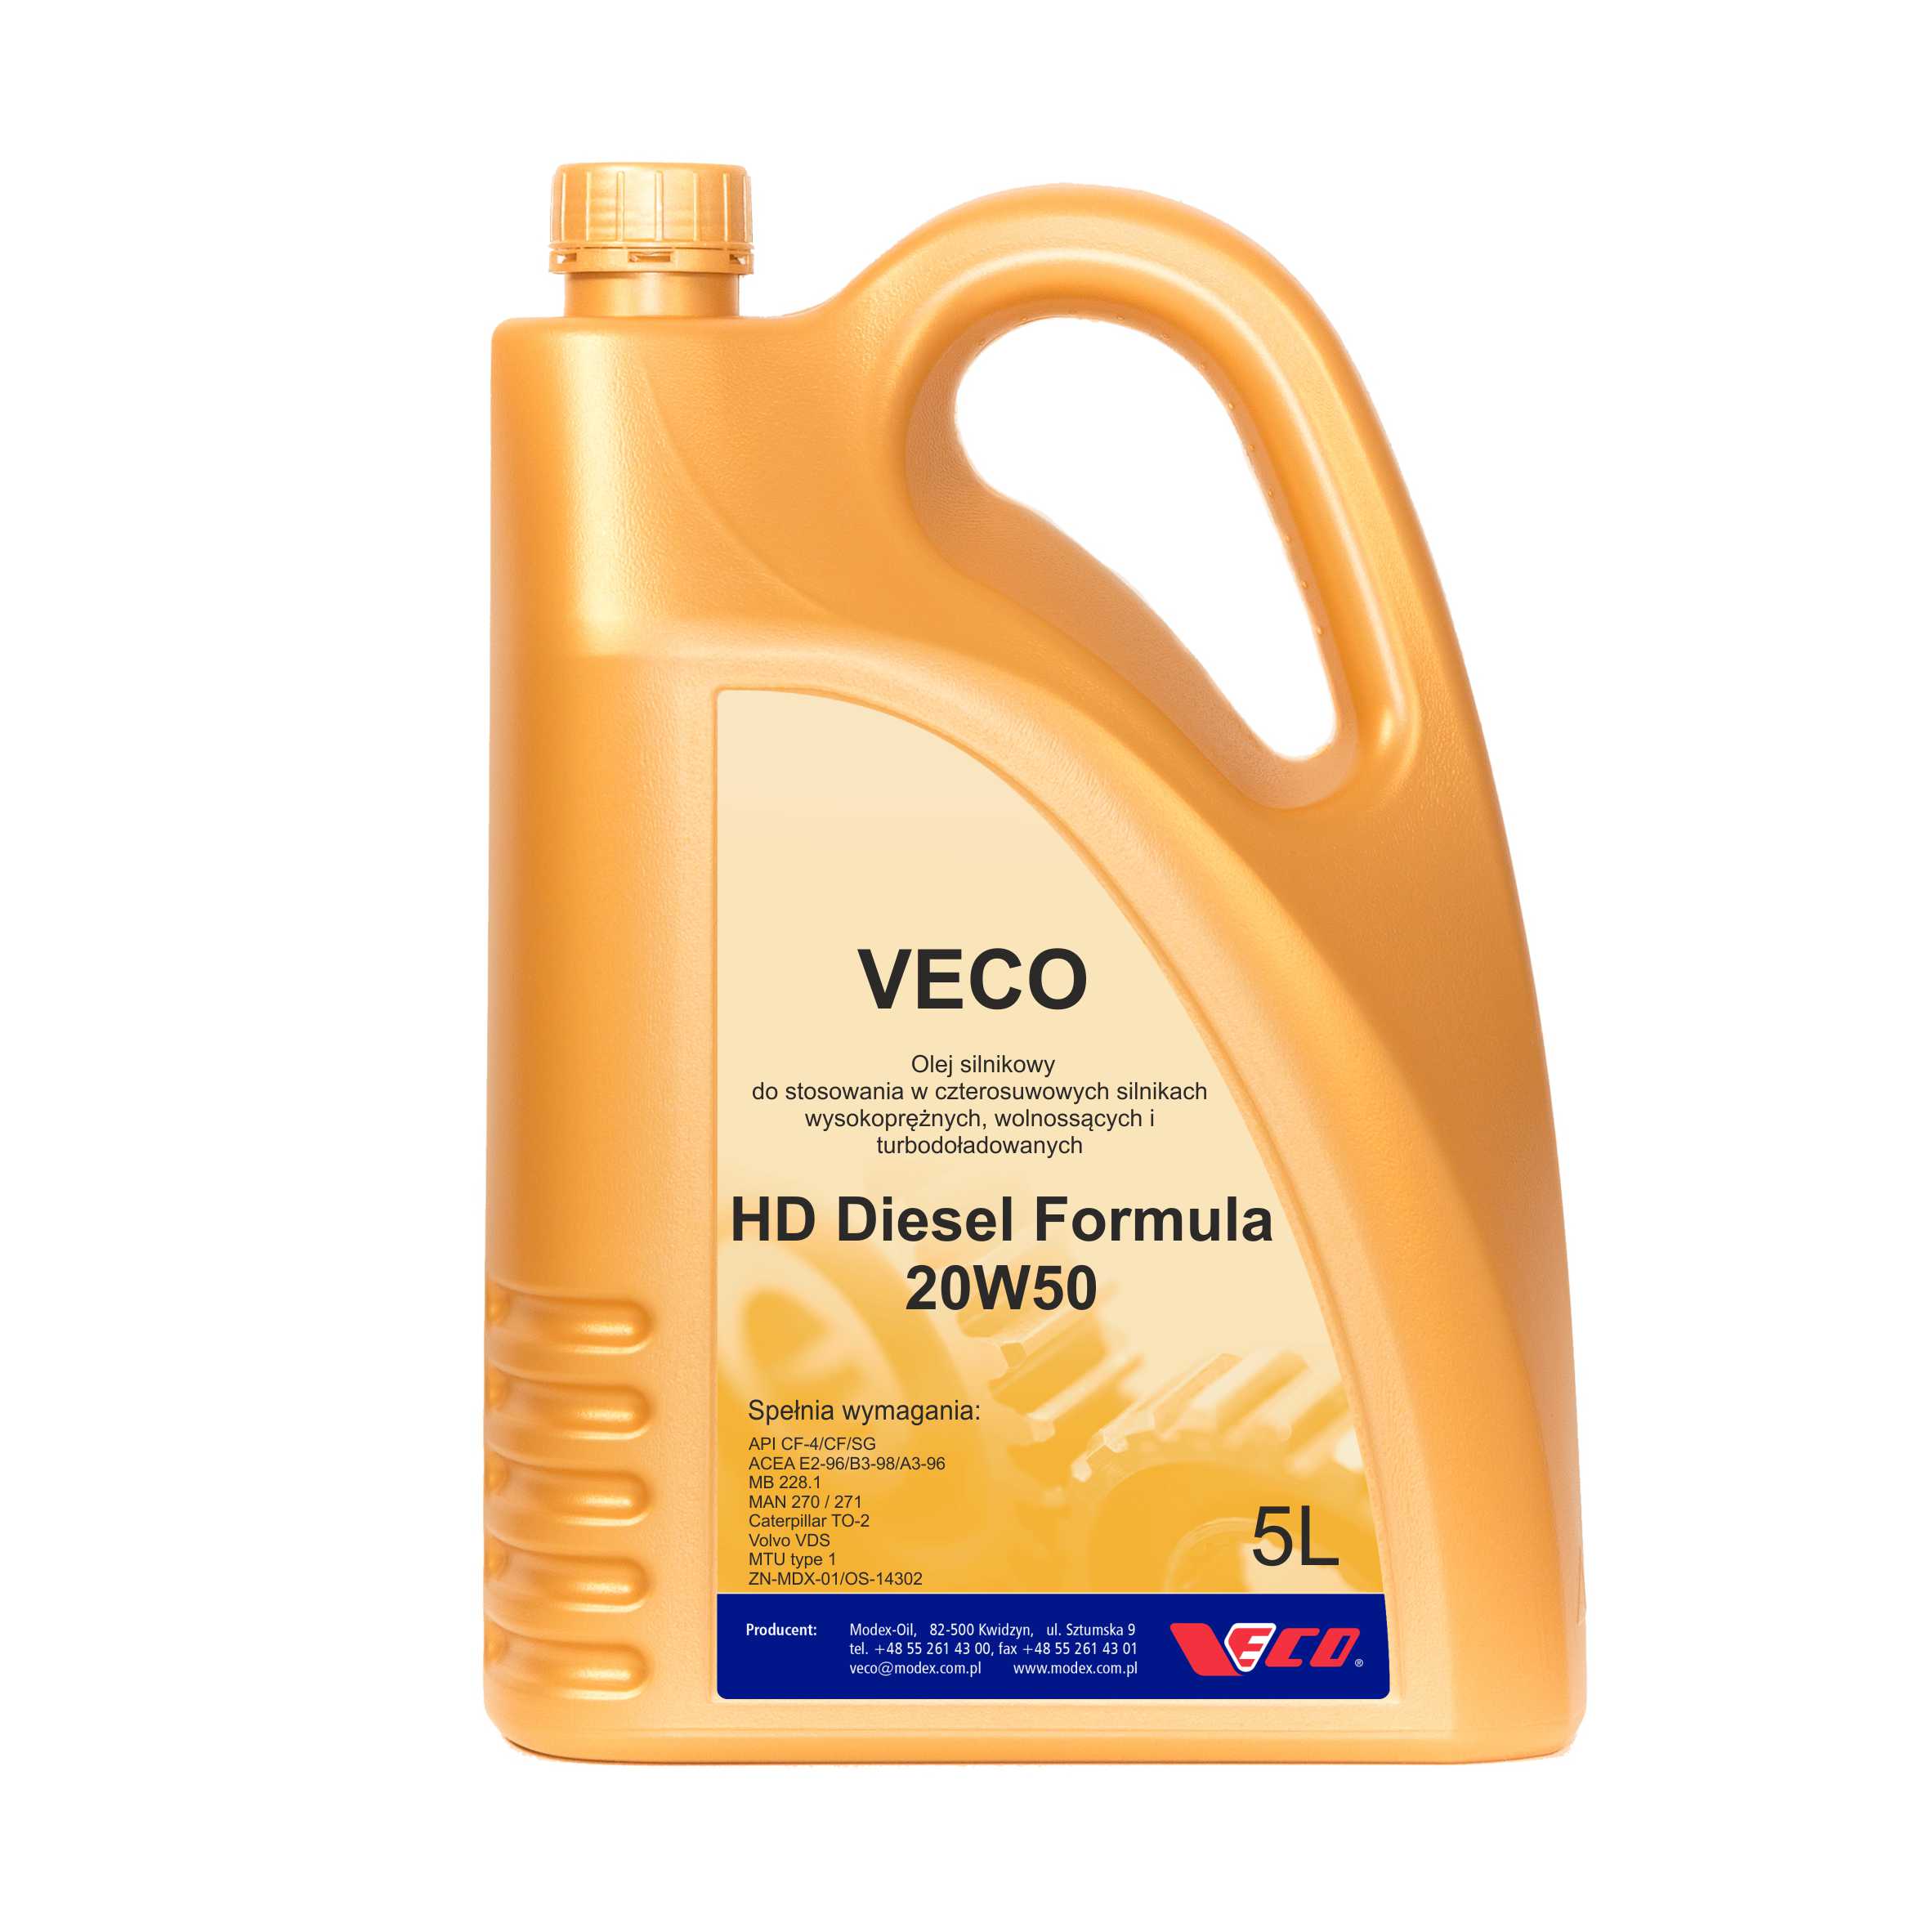 VECO HD Diesel Formula 20W50 opak 5L class=